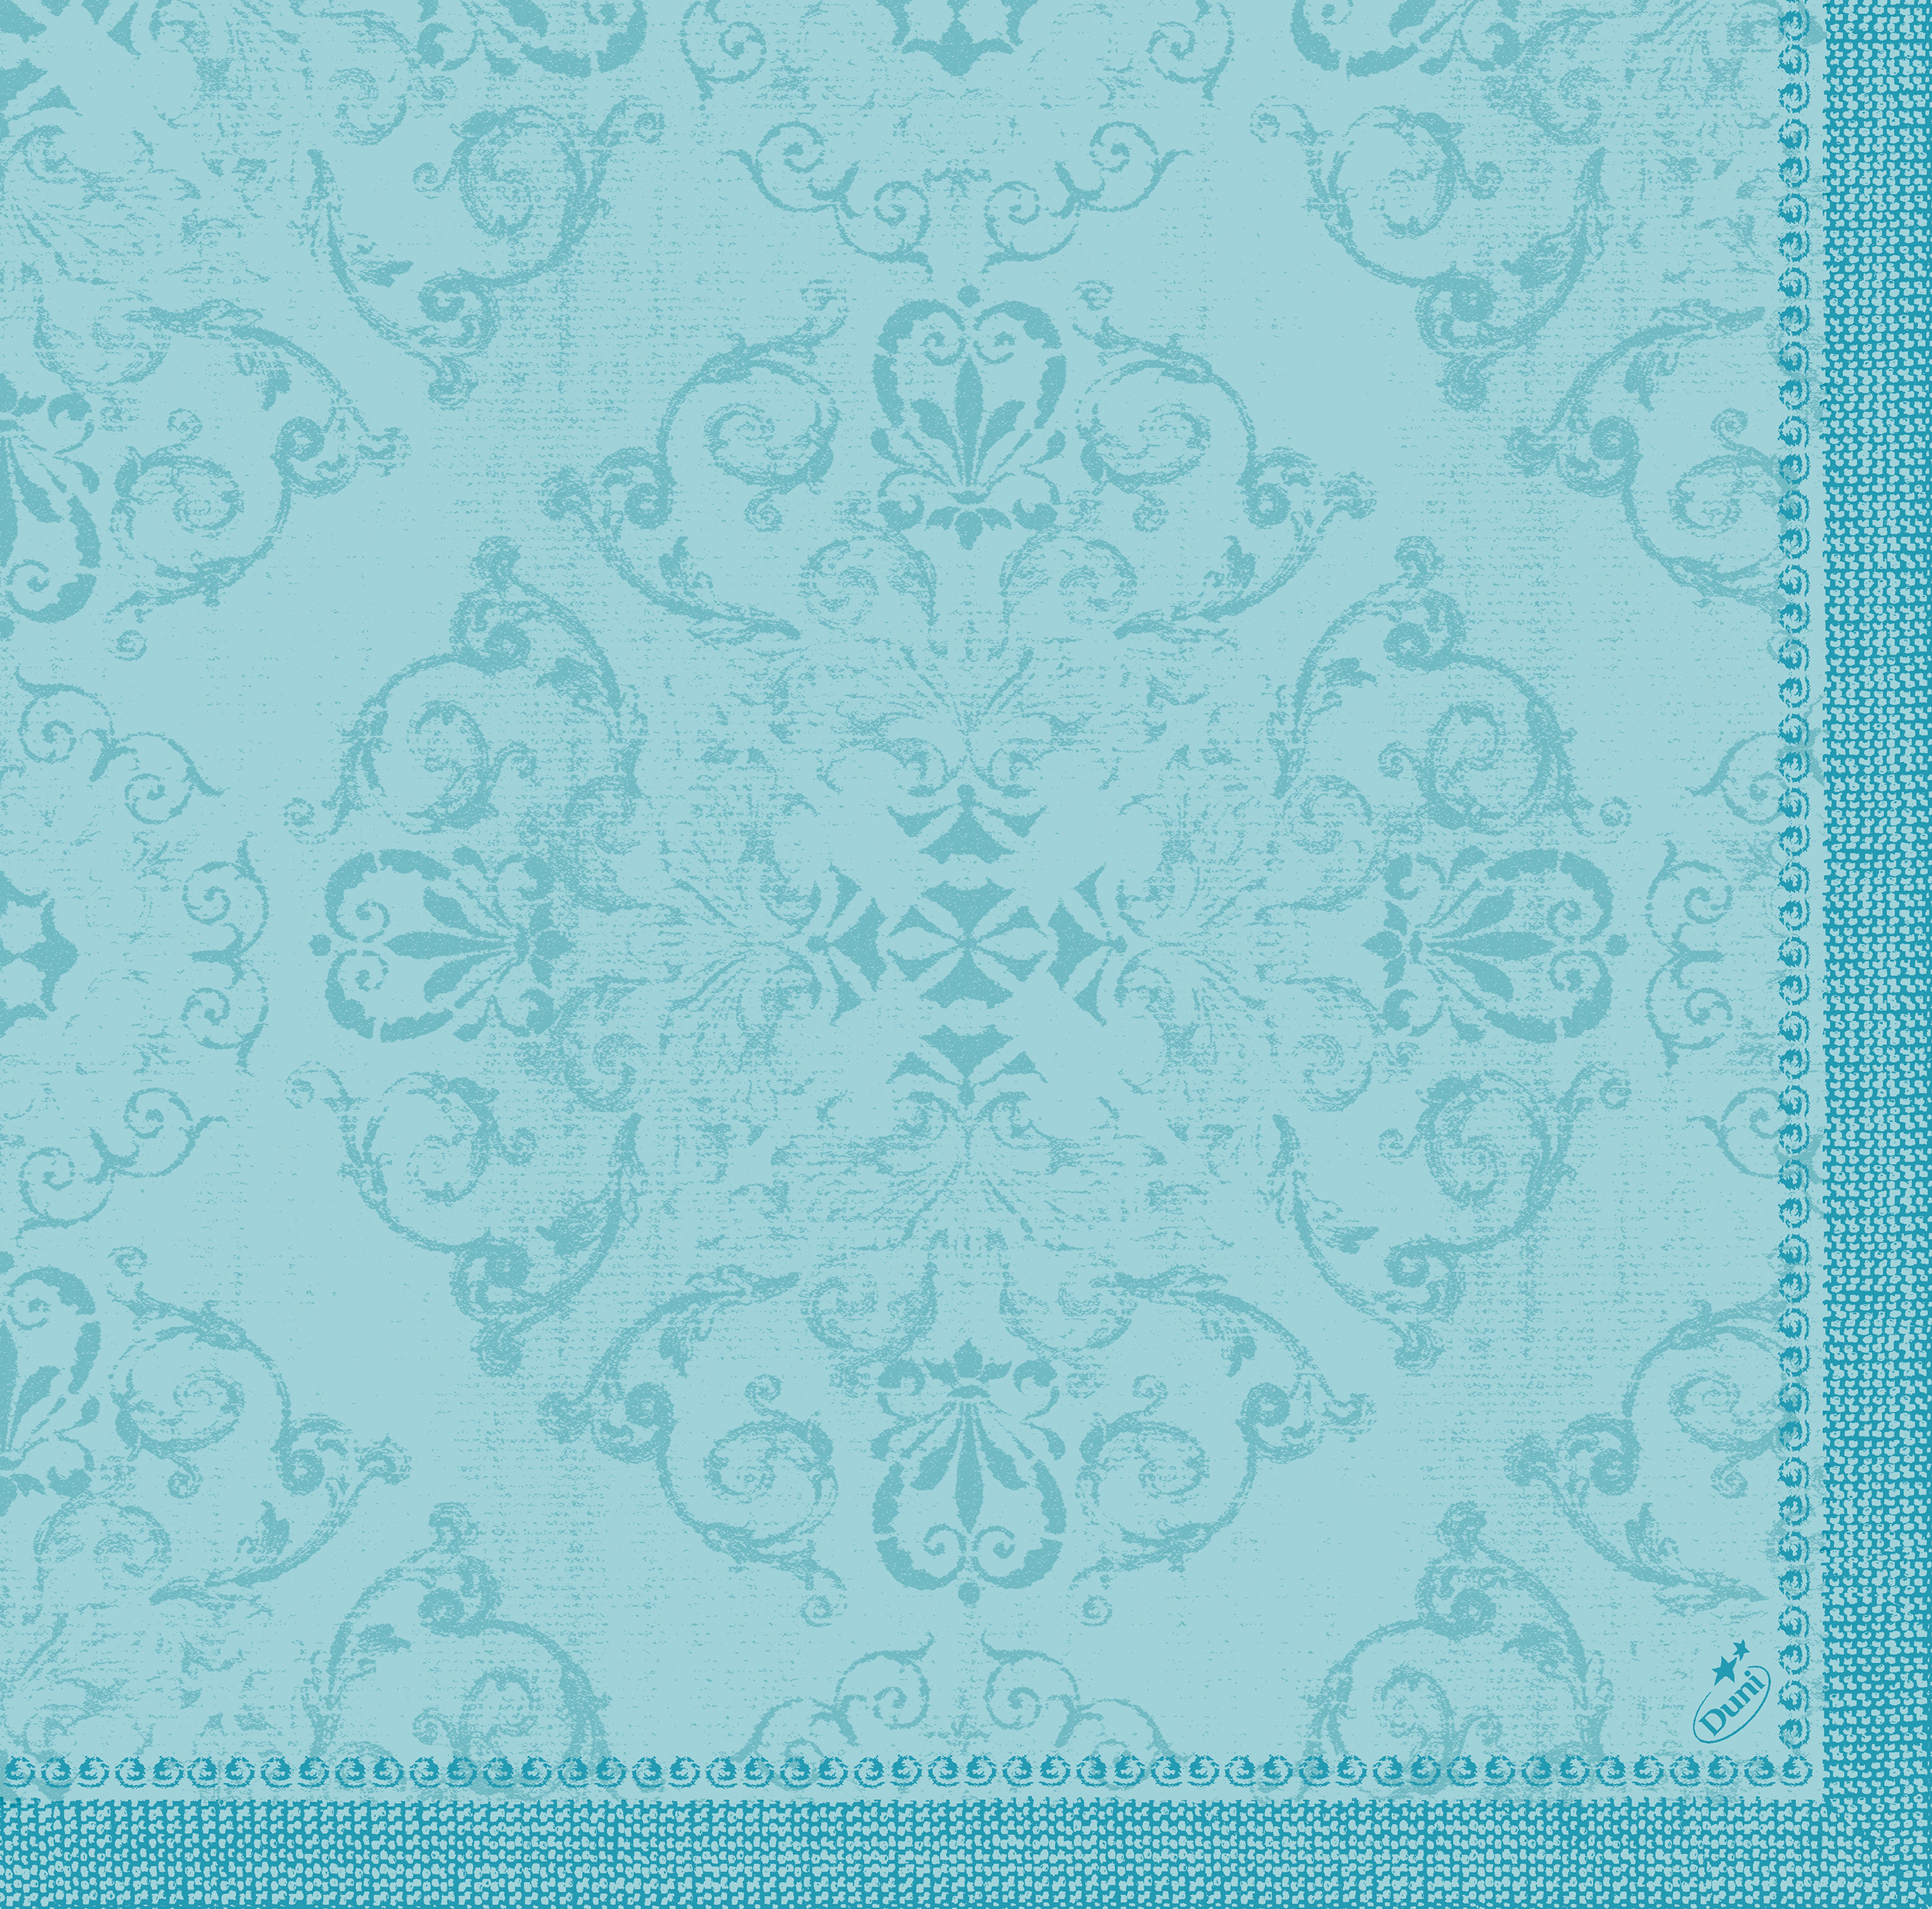 Dunilin-Servietten 1/4 Falz, 40 x 40 cm, Opulent mint blue